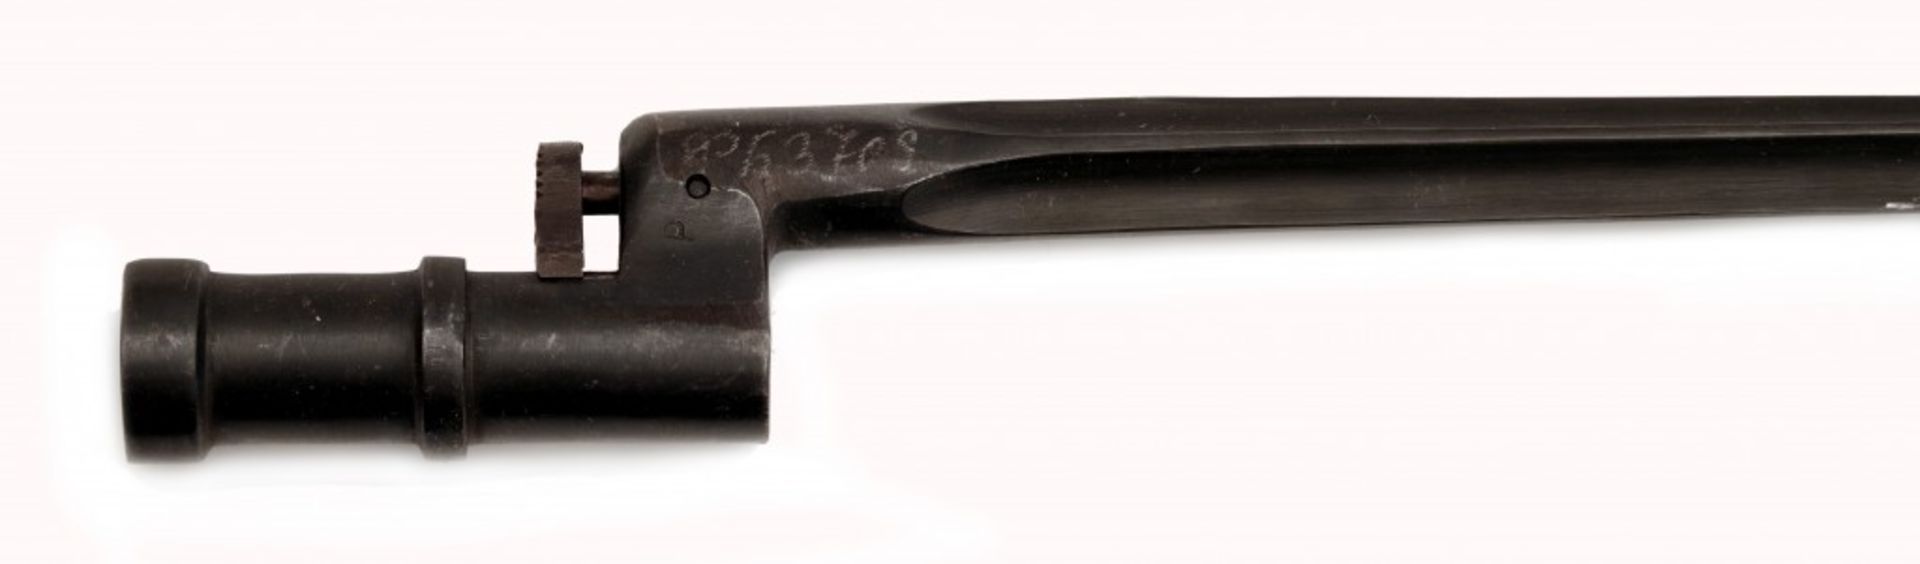 Zwei Bajonette für Mosin-Nagant-Gewehr Modelle 1891/30 und 1891 - Image 2 of 4